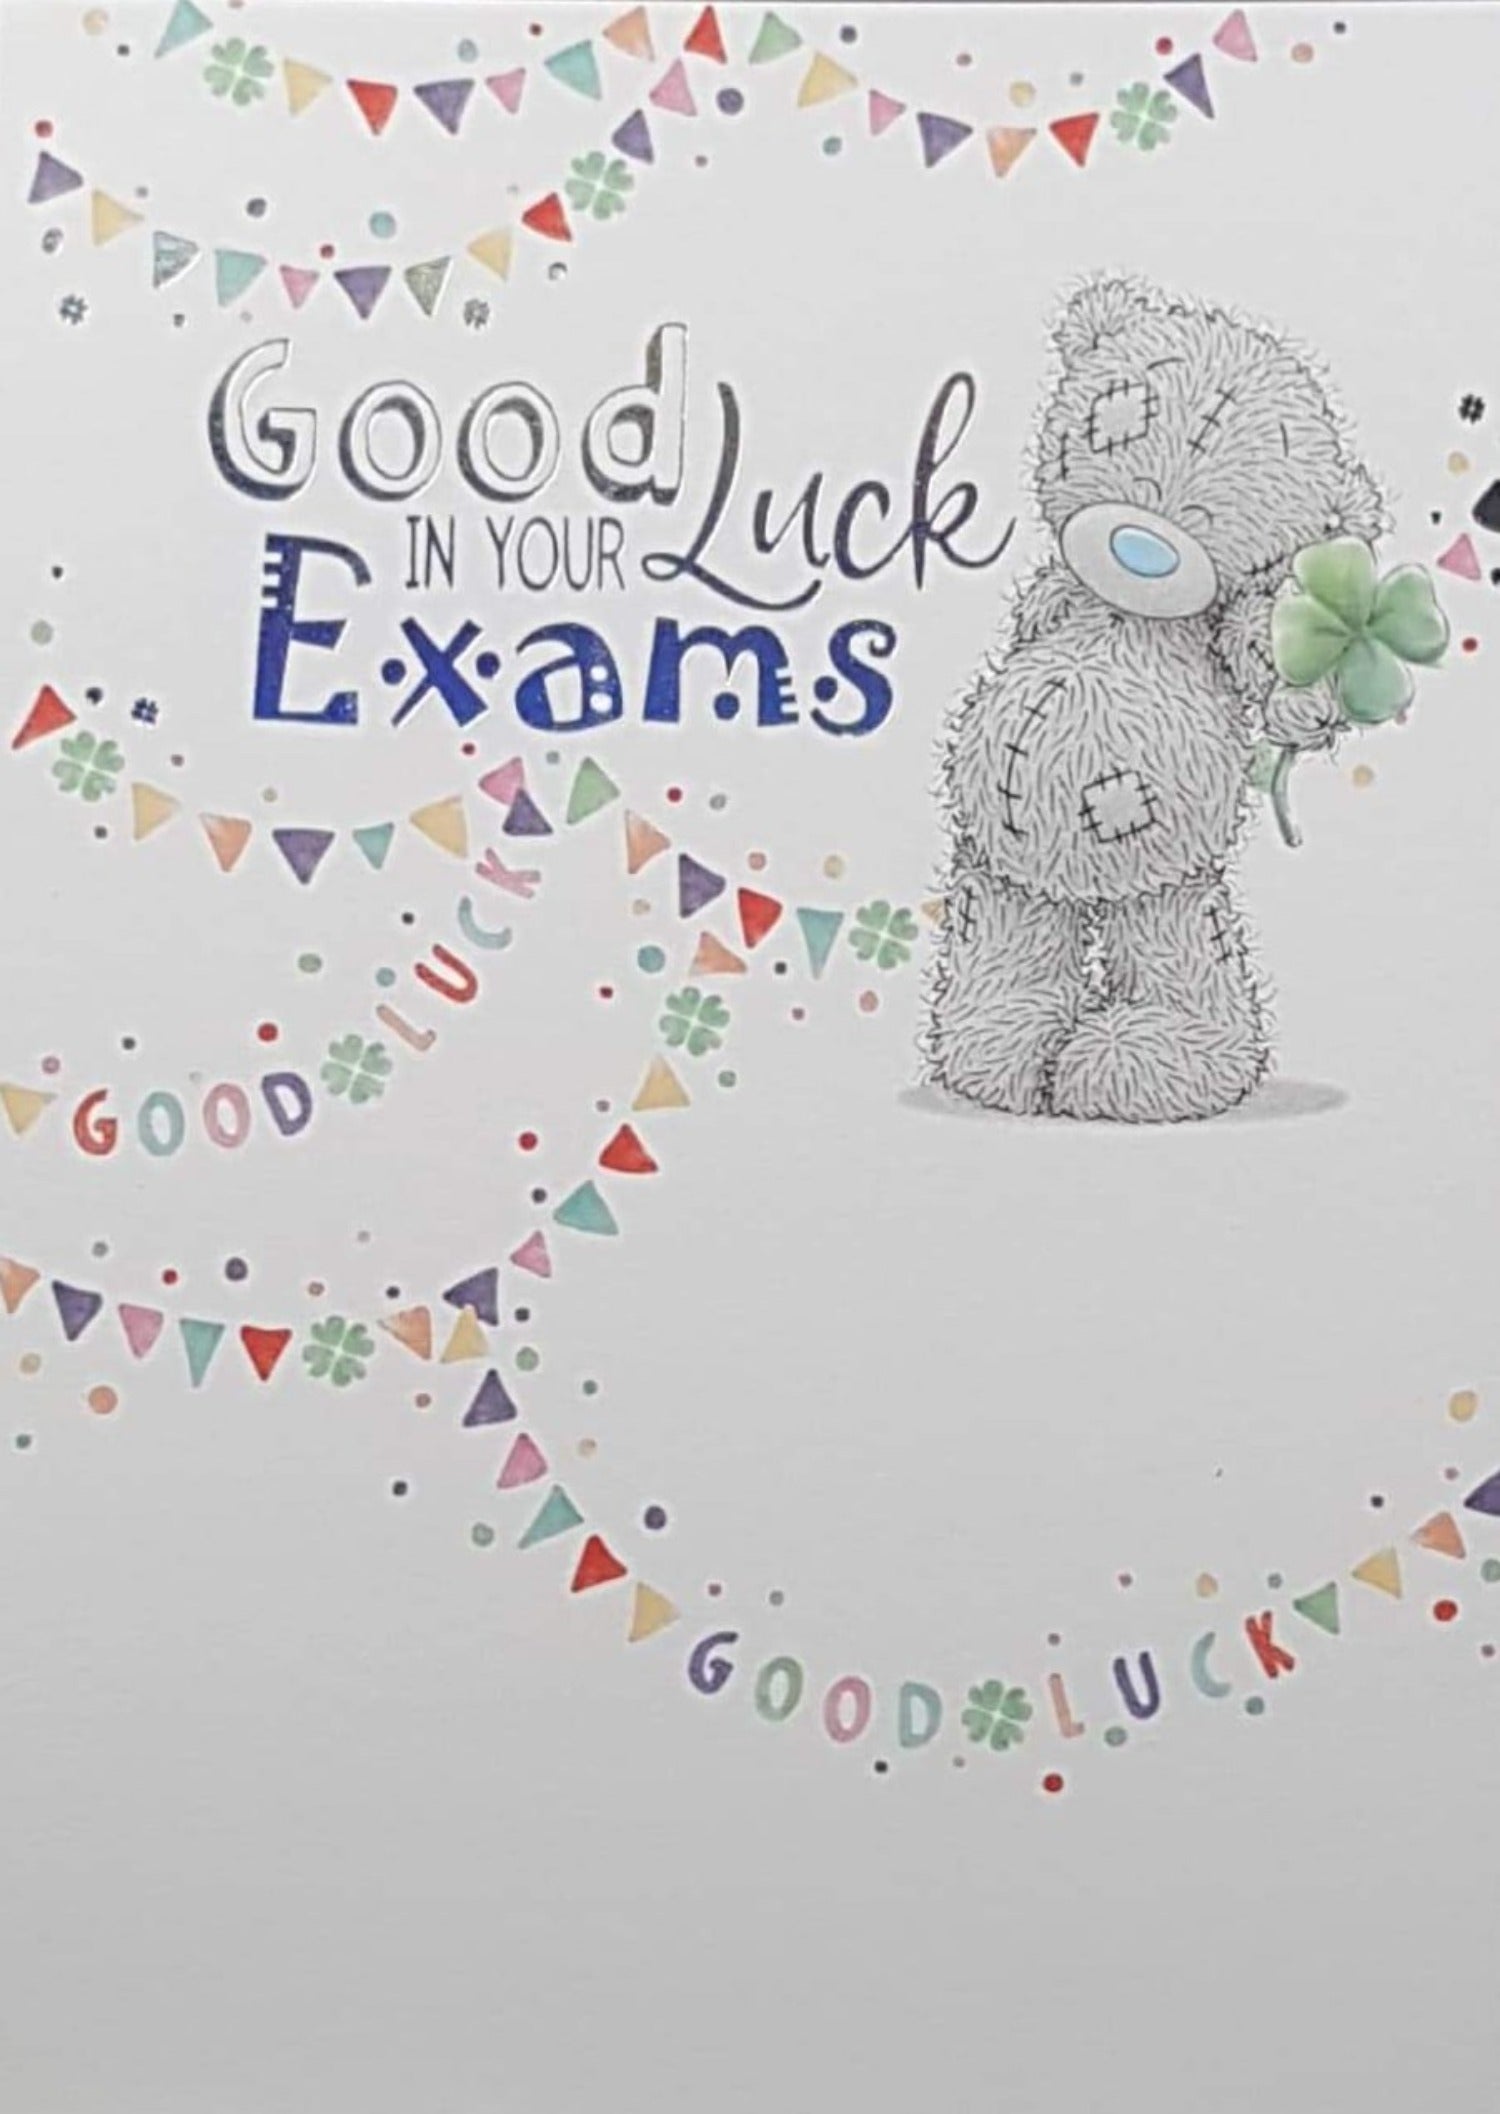 Good Luck Card - Exams / Happy Teddy Holding A Clover